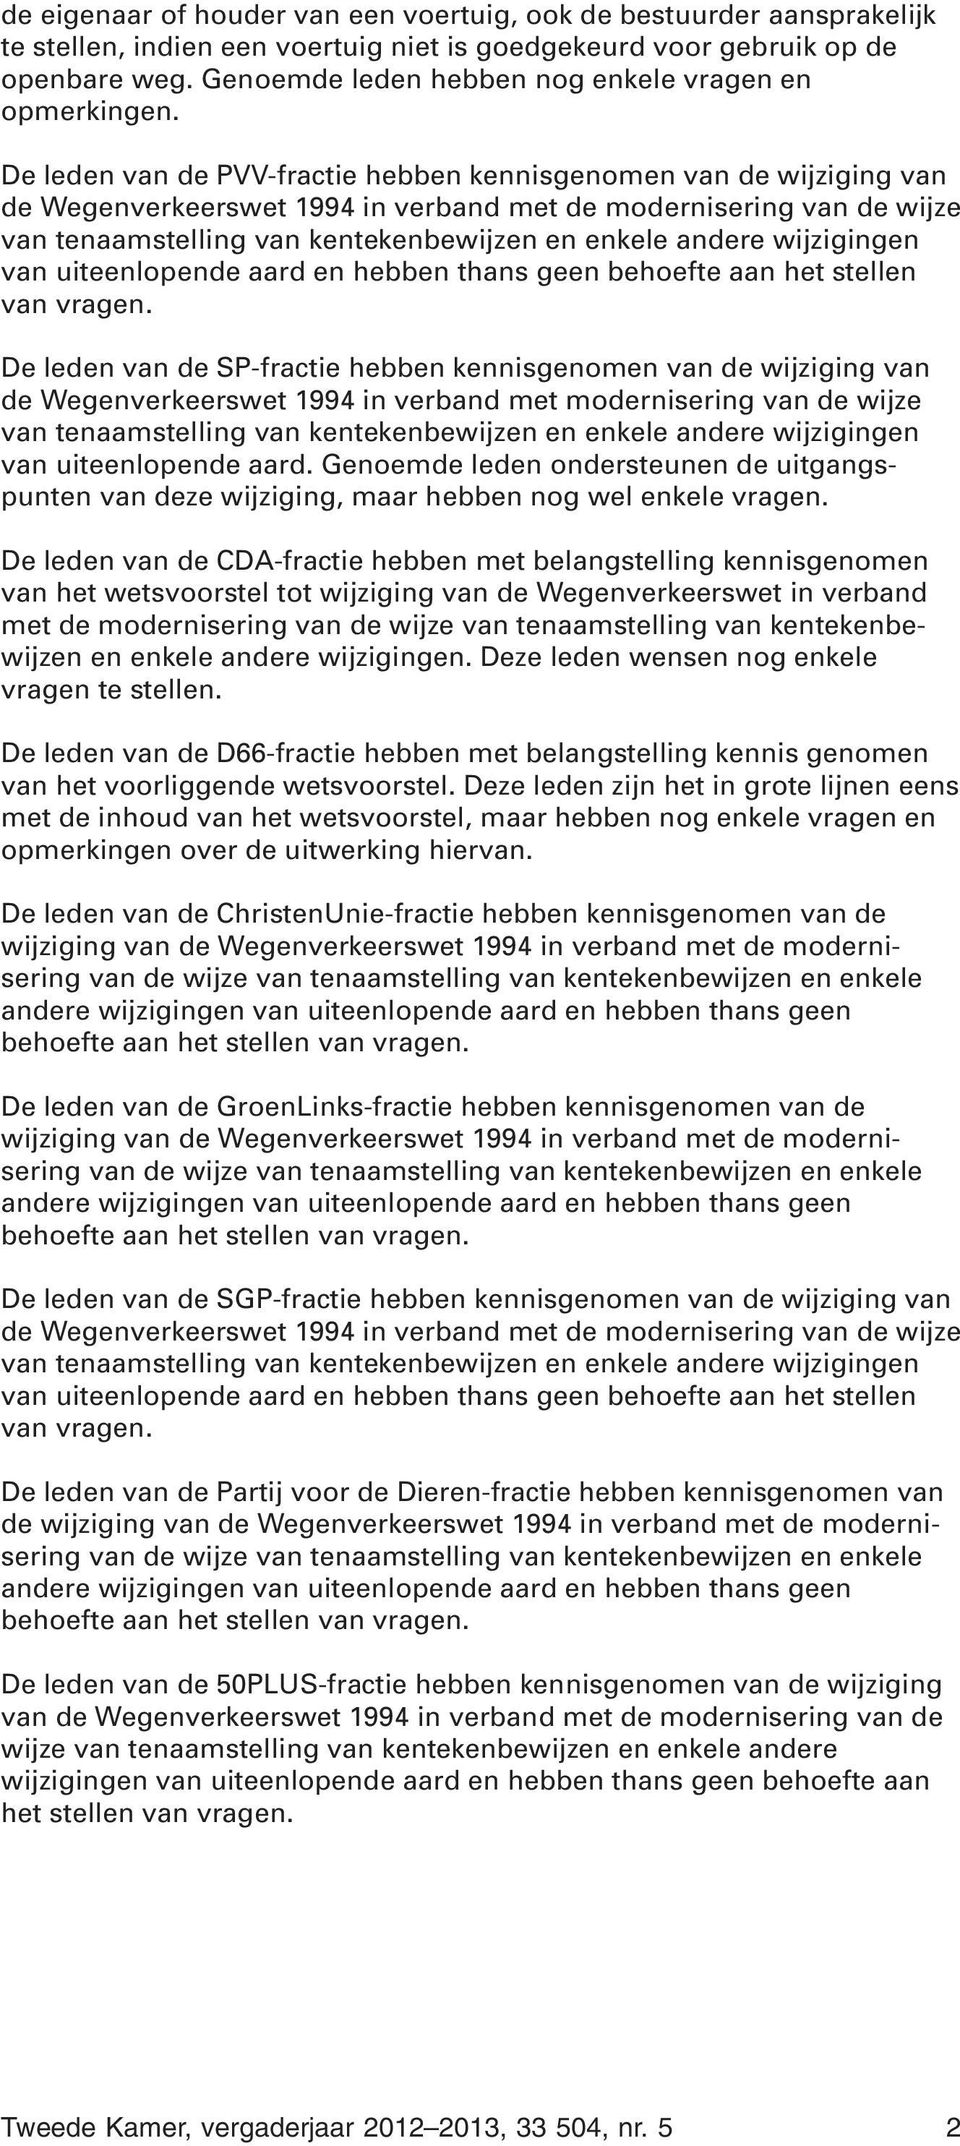 De leden van de PVV-fractie hebben kennisgenomen van de wijziging van de Wegenverkeerswet 1994 in verband met de modernisering van de wijze van tenaamstelling van kentekenbewijzen en enkele andere